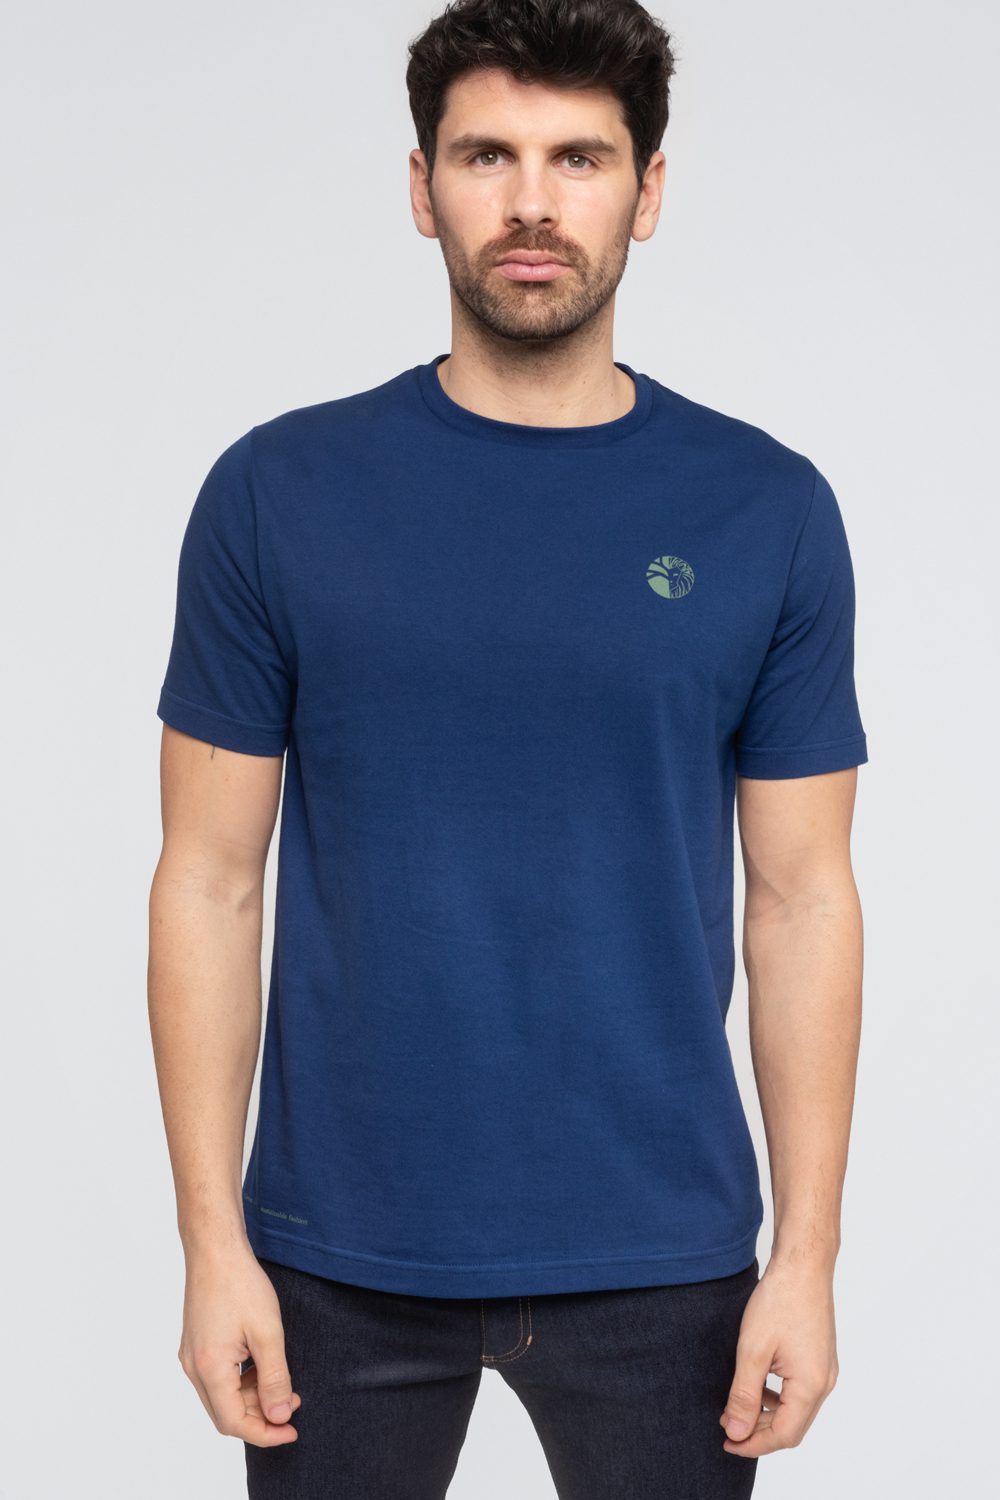 LÉO - T-shirt 100% Coton BIO - BLEU